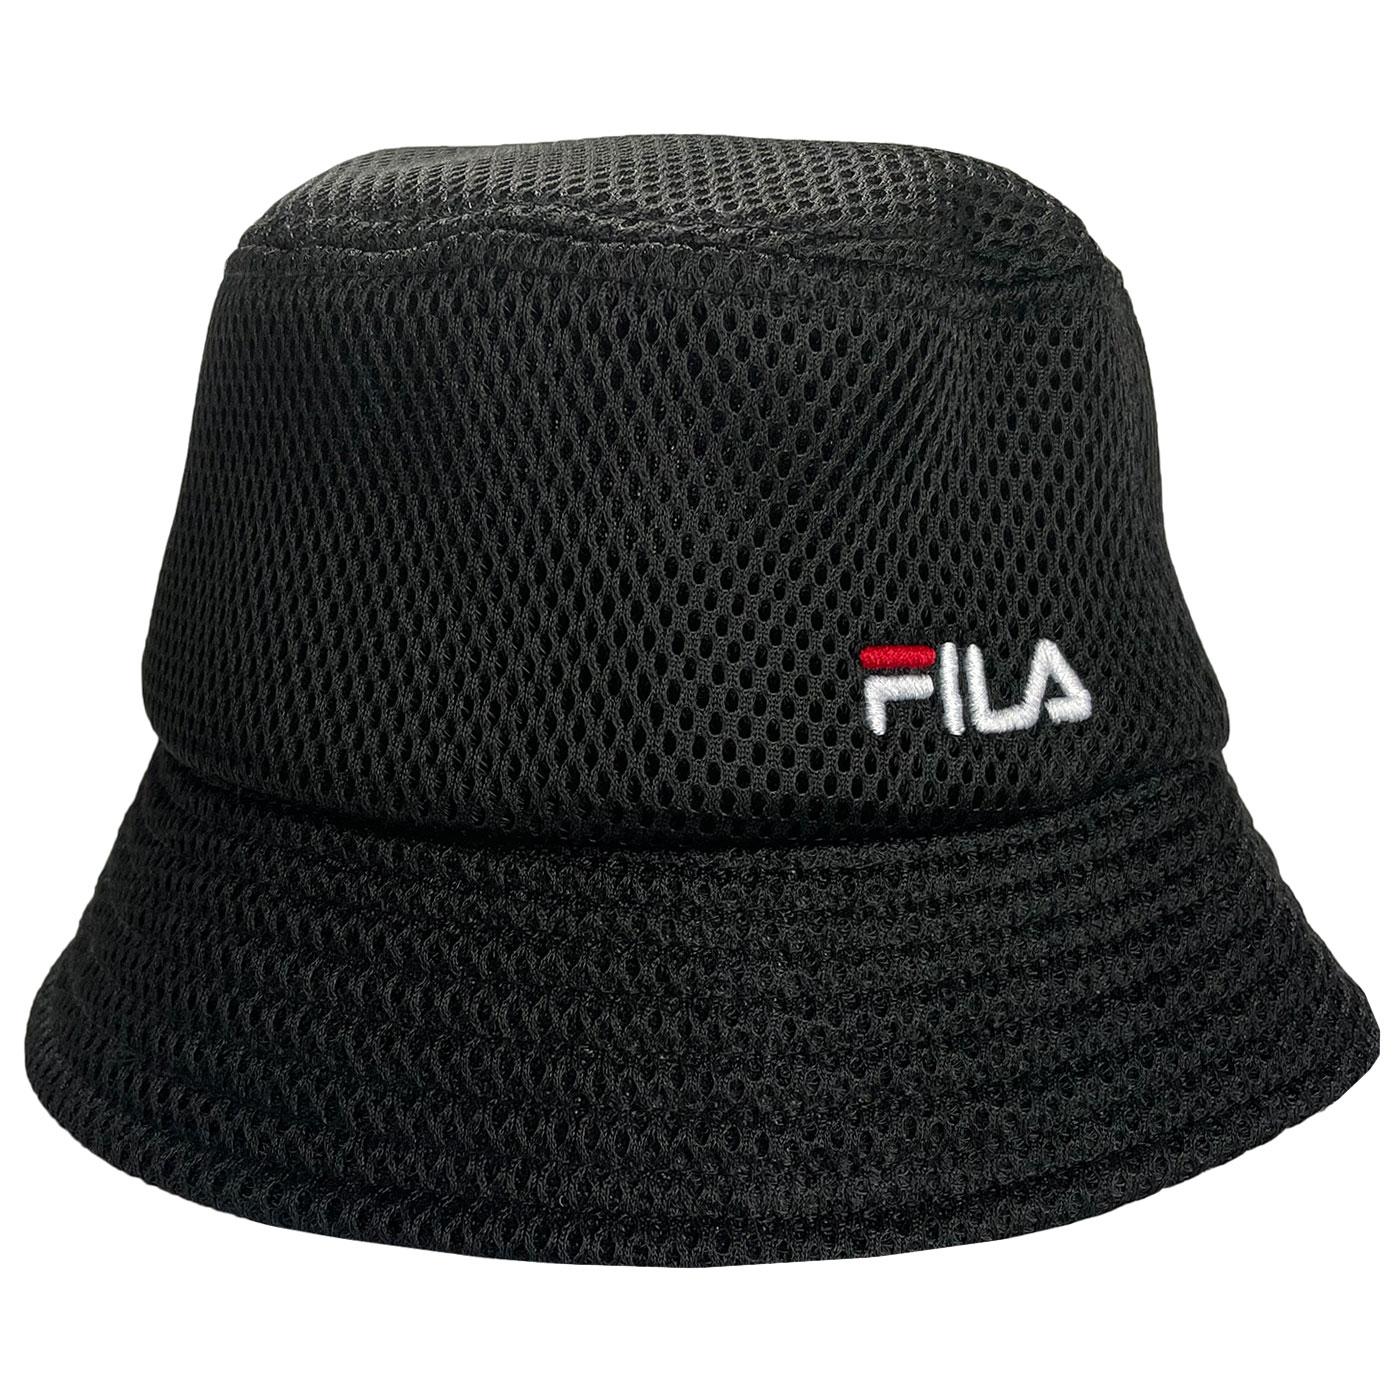 Yammy FILA VINTAGE 90s Retro Mesh Bucket Hat (B)